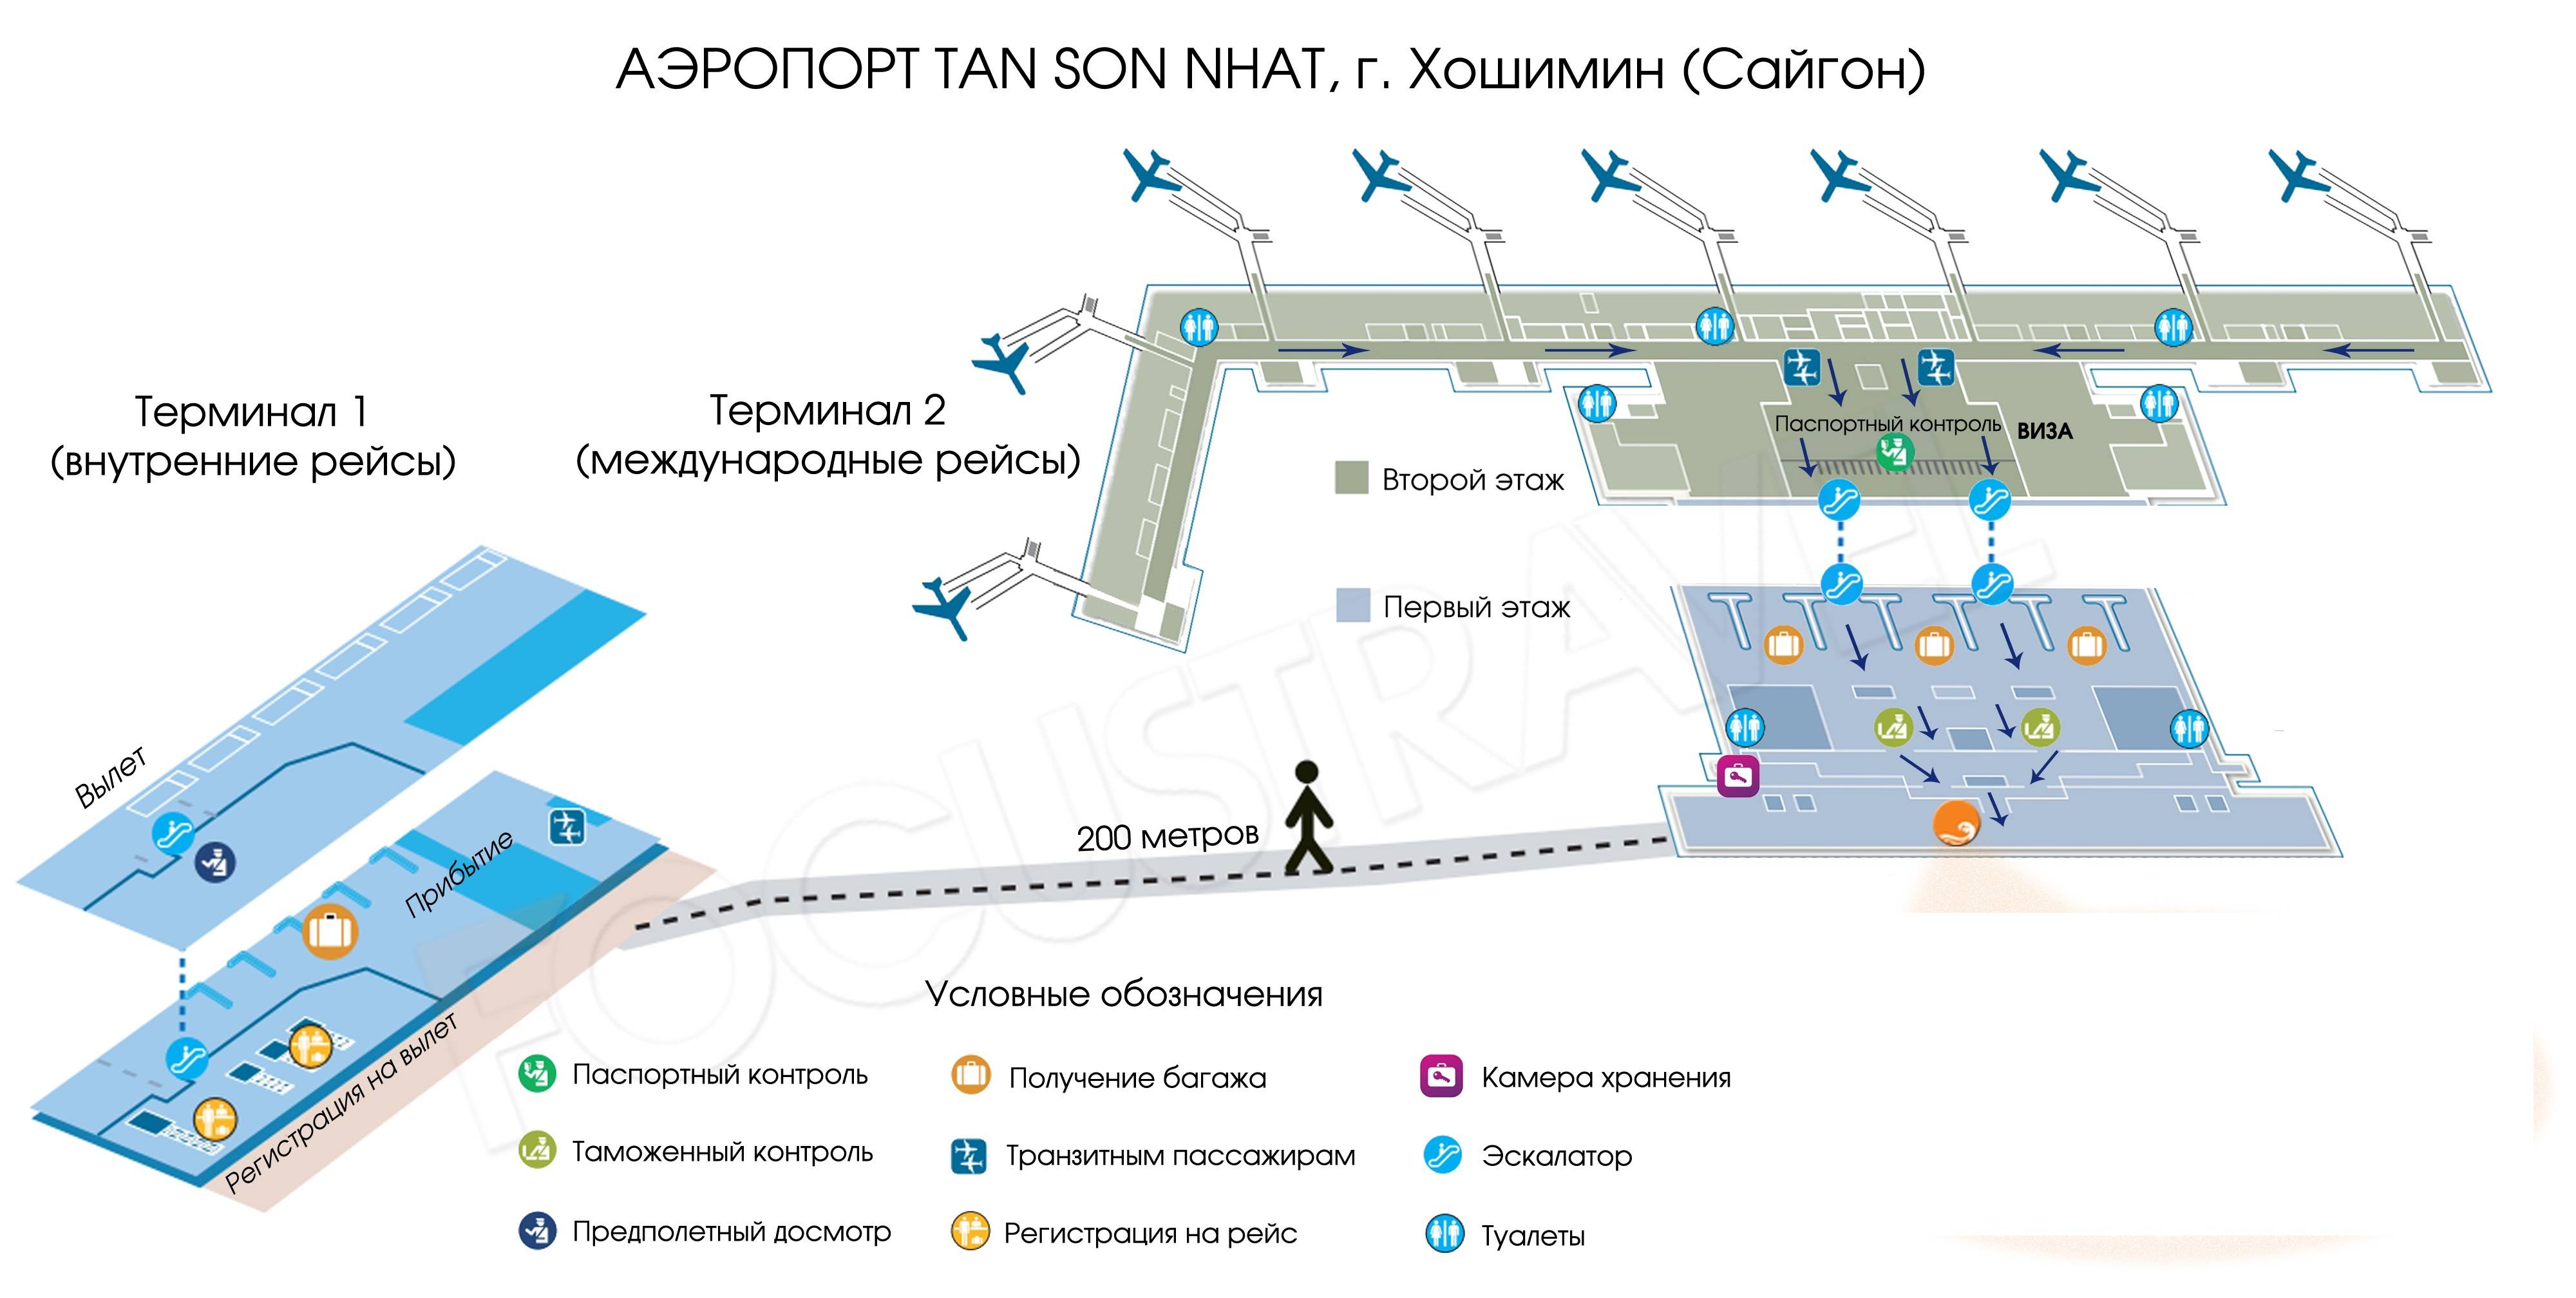 Международные аэропорты Болгарии